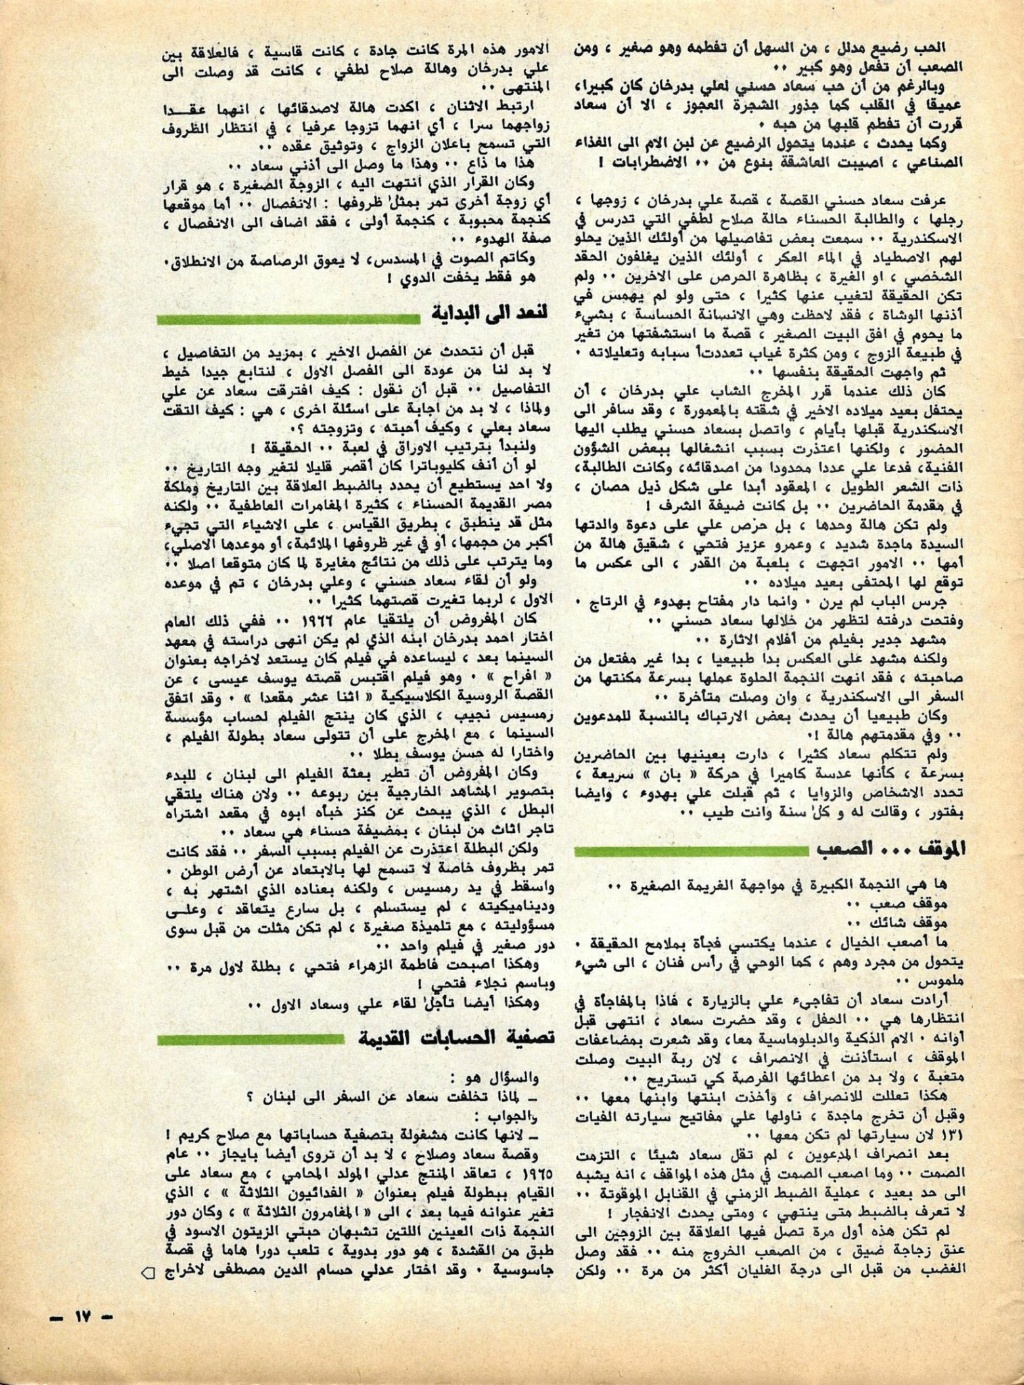 1981 - مقال صحفي : سعاد حسني وعلي بدرخان وقصة الحب الذي كان 1981 م 611